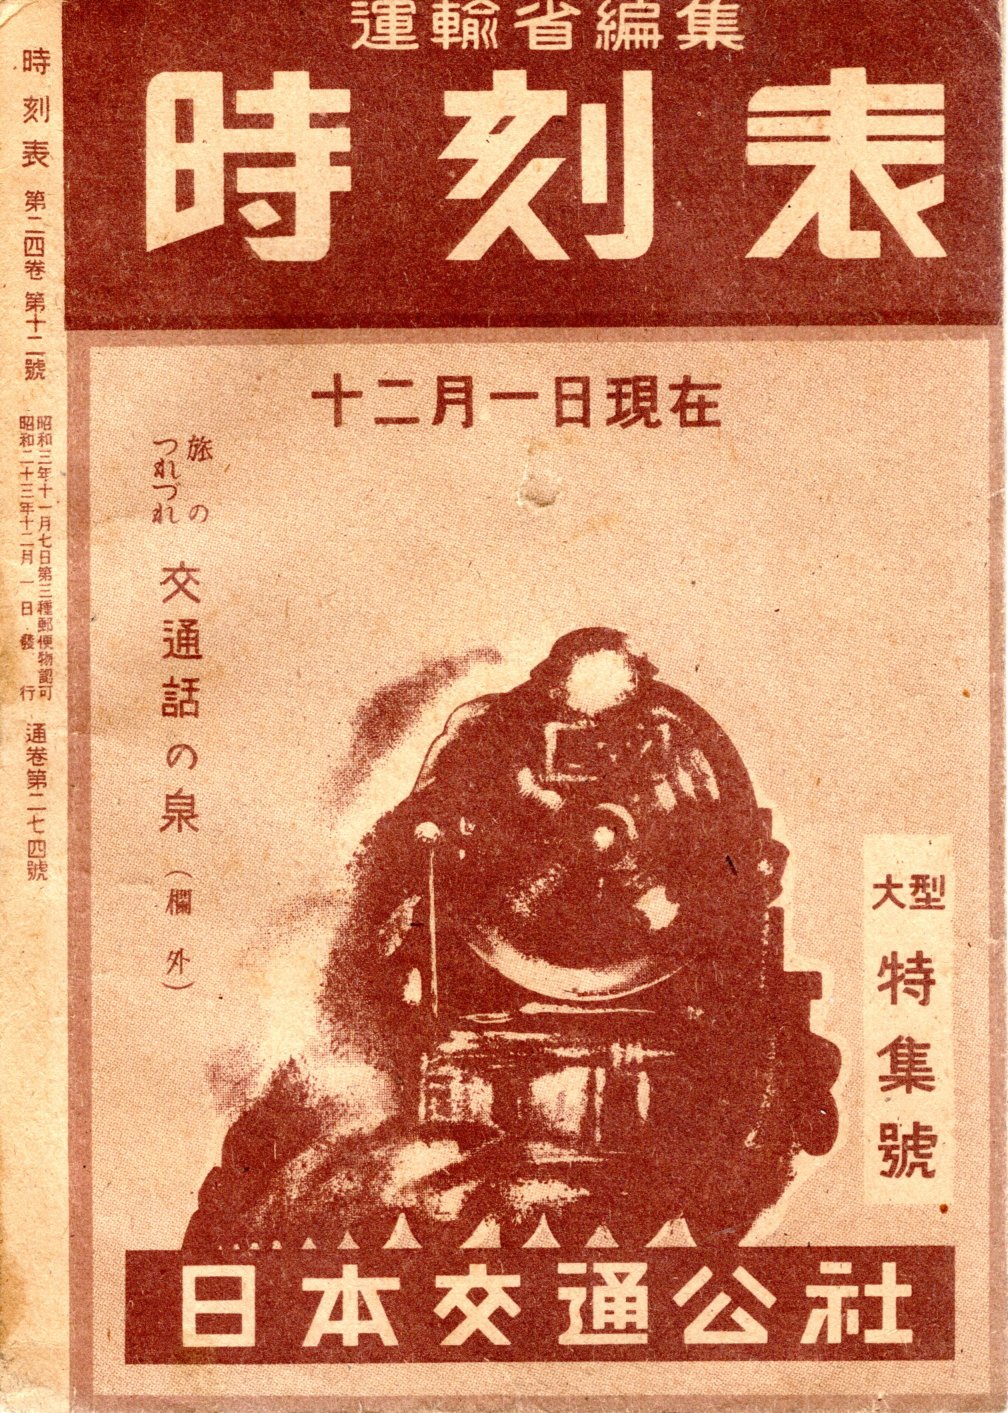 JTB時刻表1948年12月号